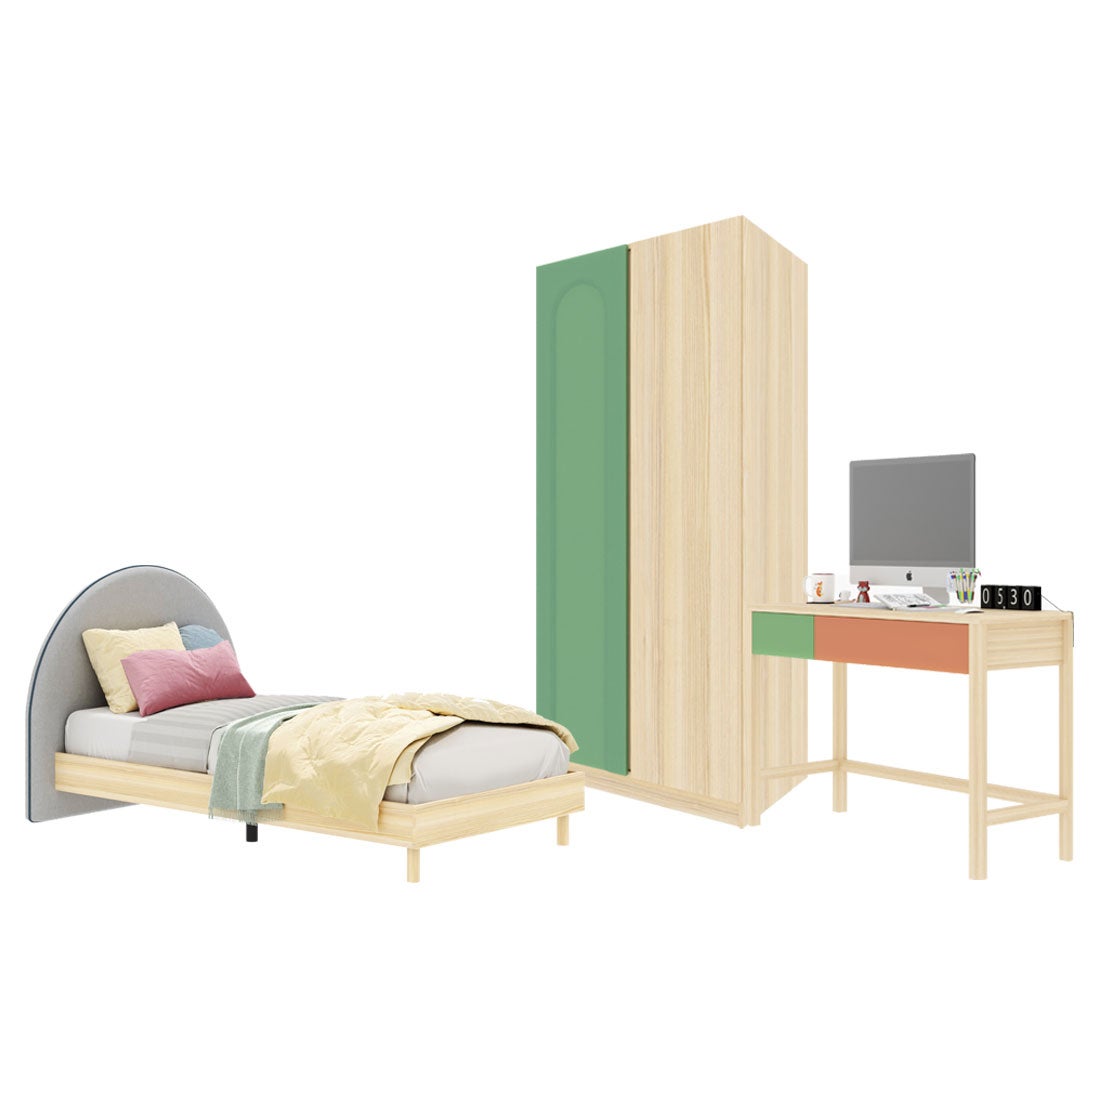 ชุดห้องนอน ขนาด 3.5 ฟุต-เบาะครีม รุ่น Bingsoo & ตู้เสื้อผ้า 90 ซม. สีเขียว01